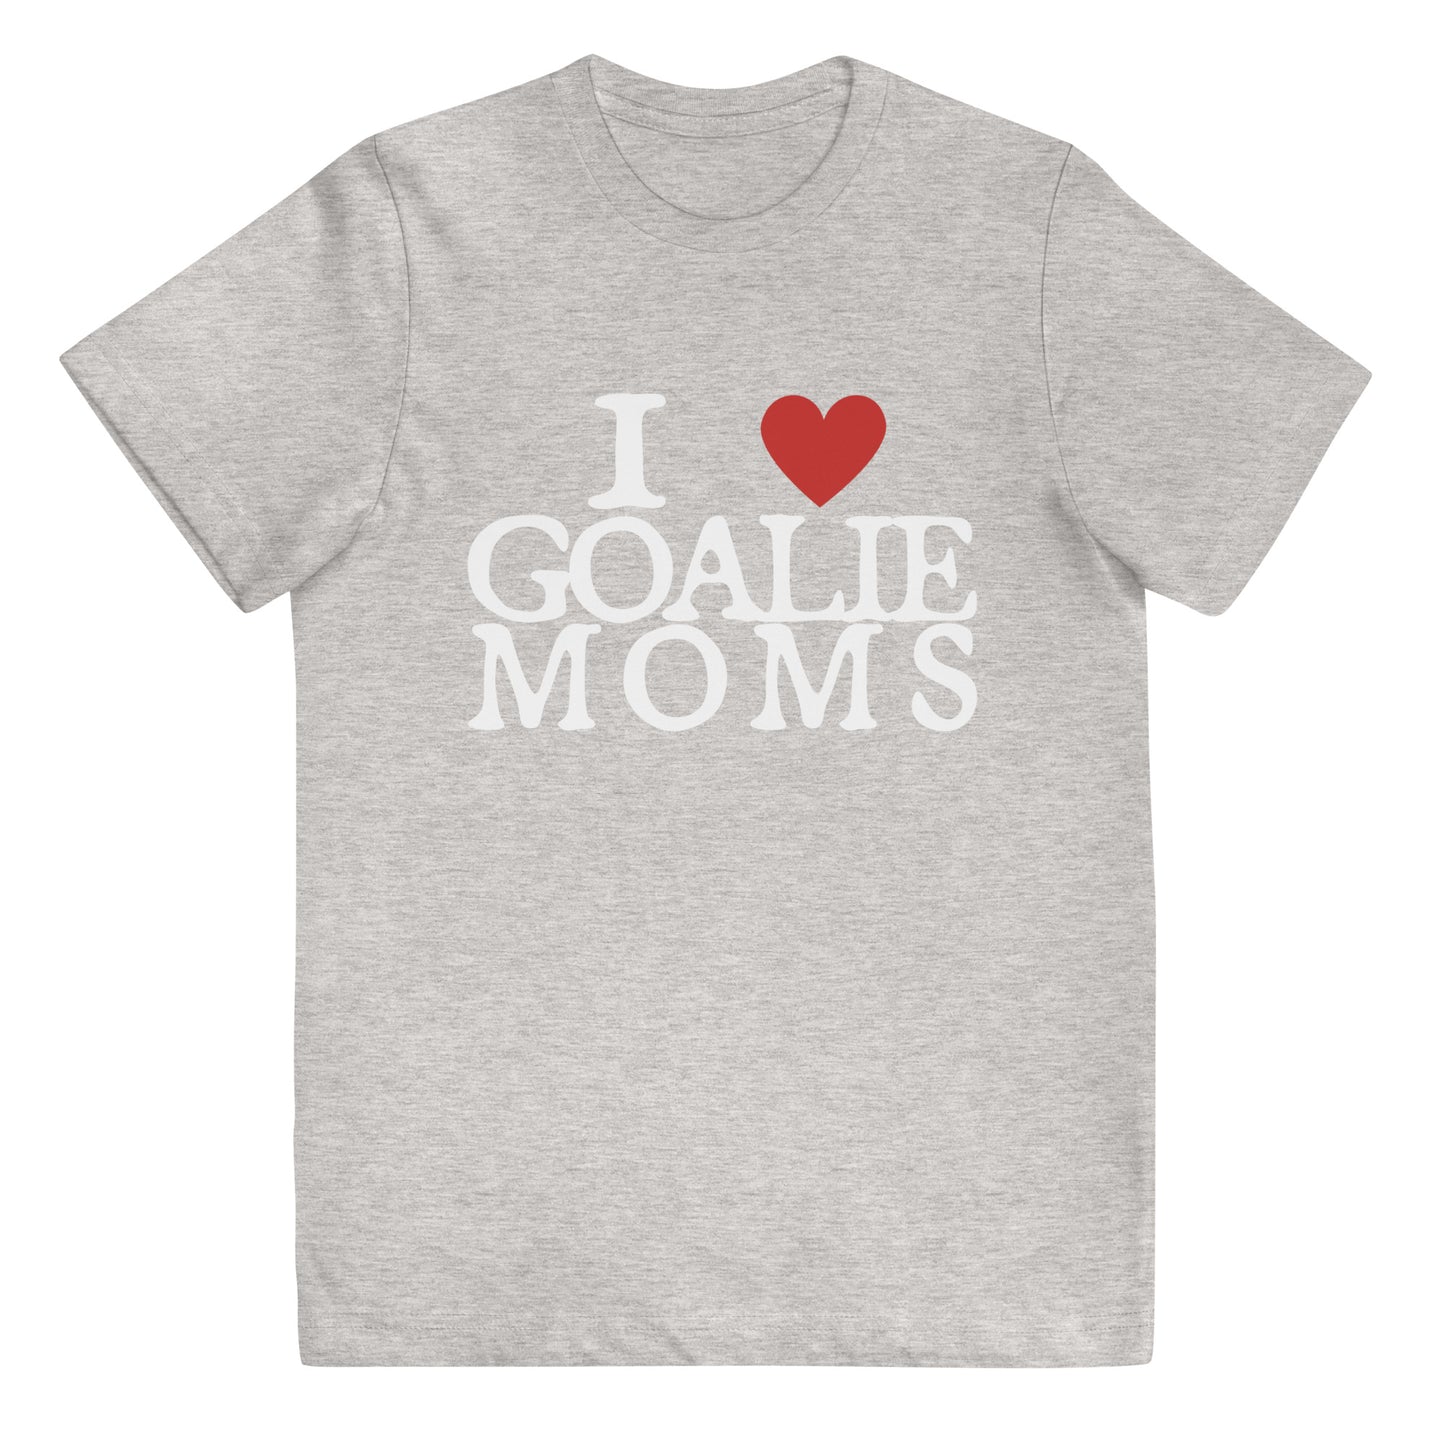 I Love Goalie Moms Youth t-shirt